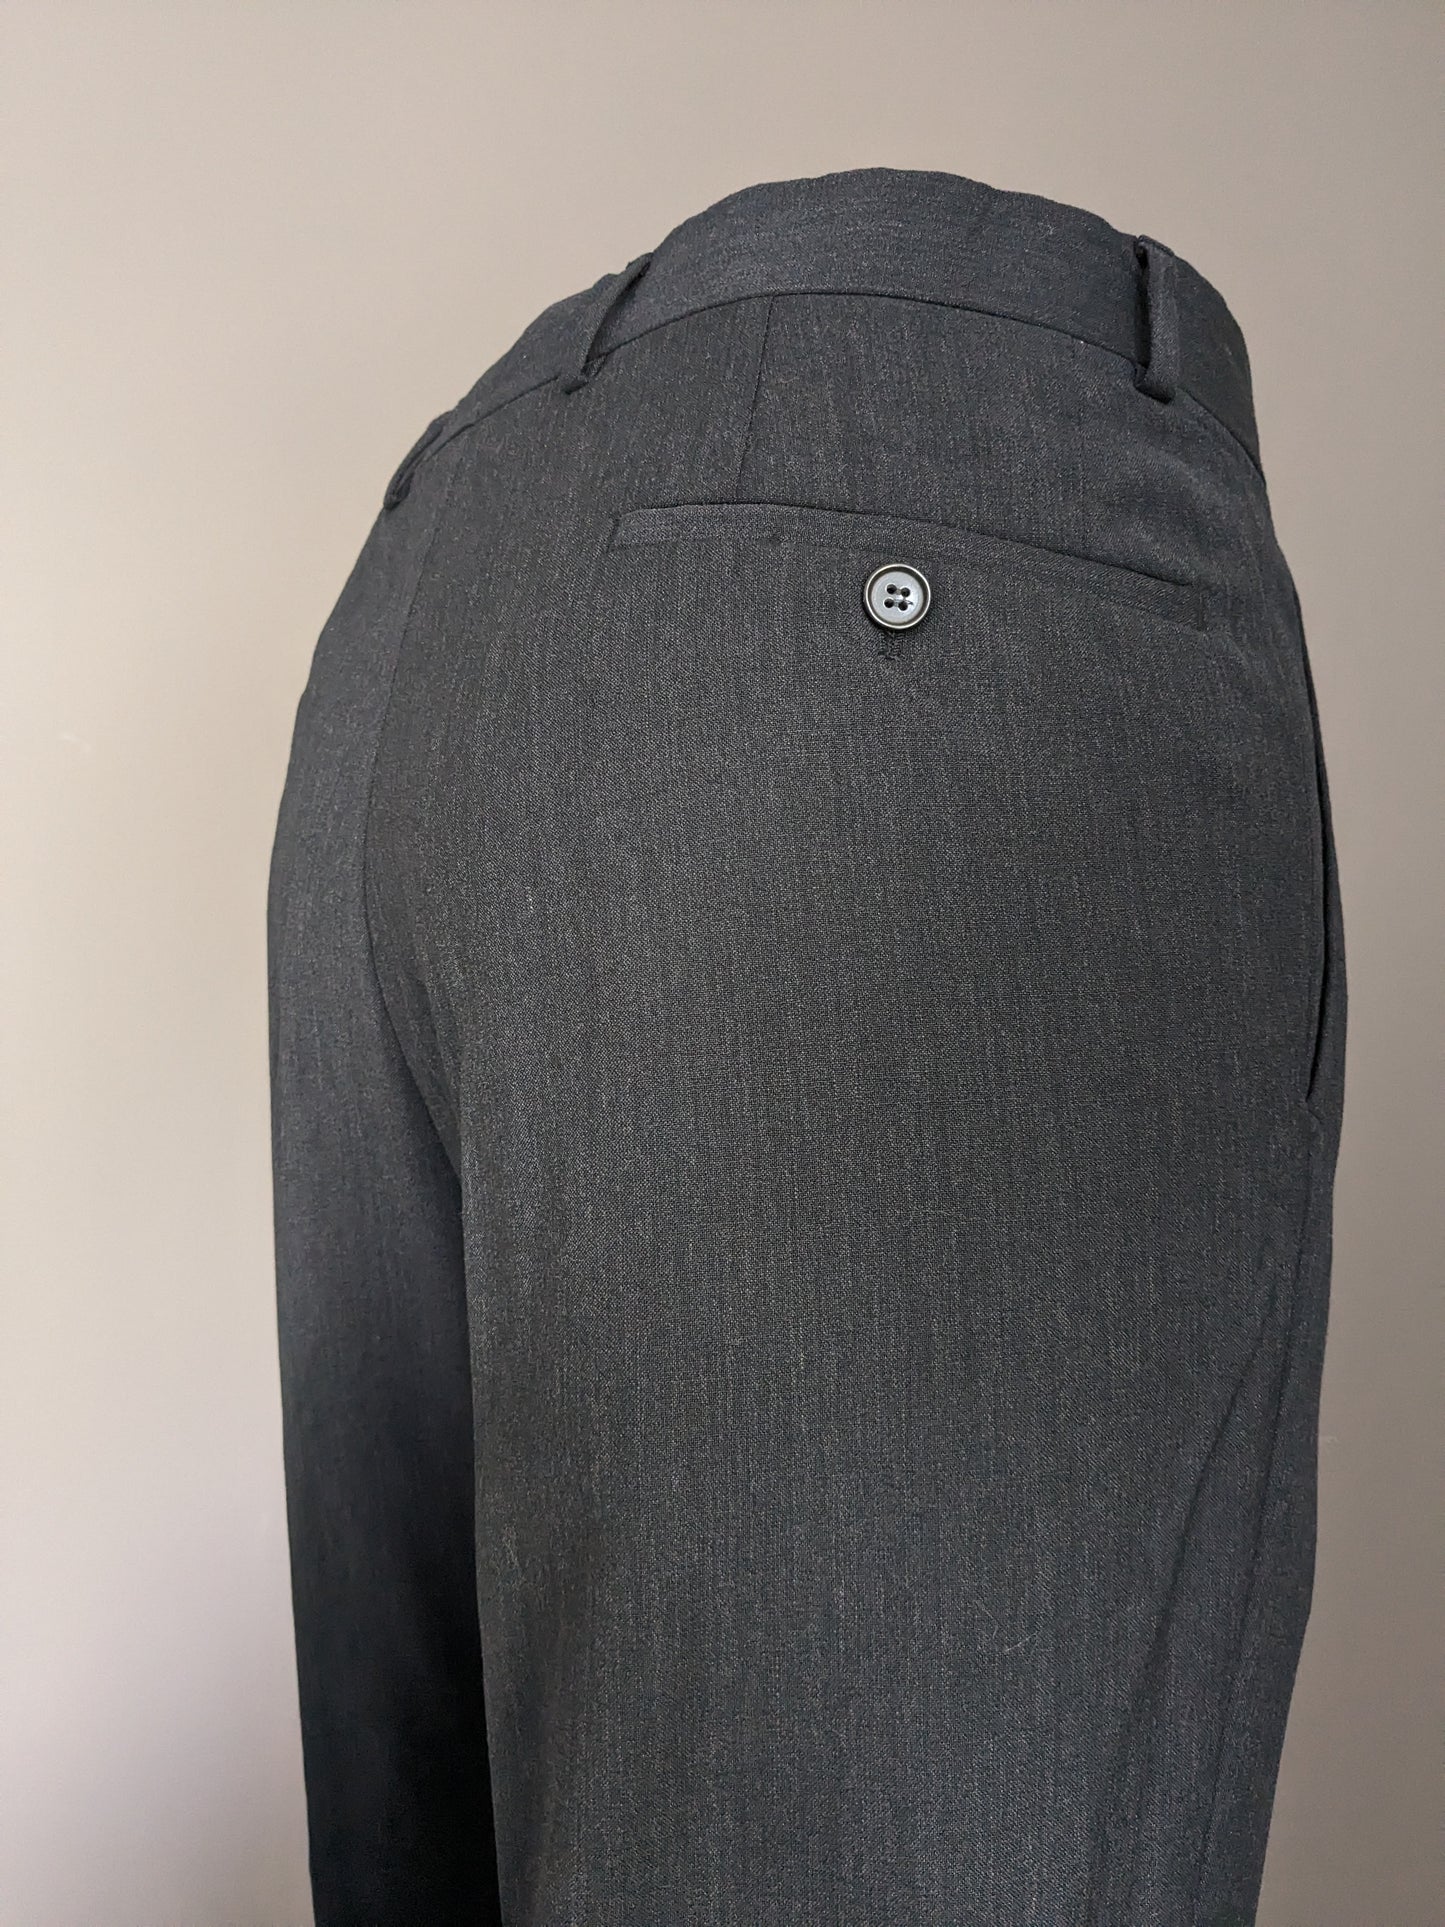 Pantalon avec couverture. Gris foncé mélangé. Taille 52 / L. # 501.